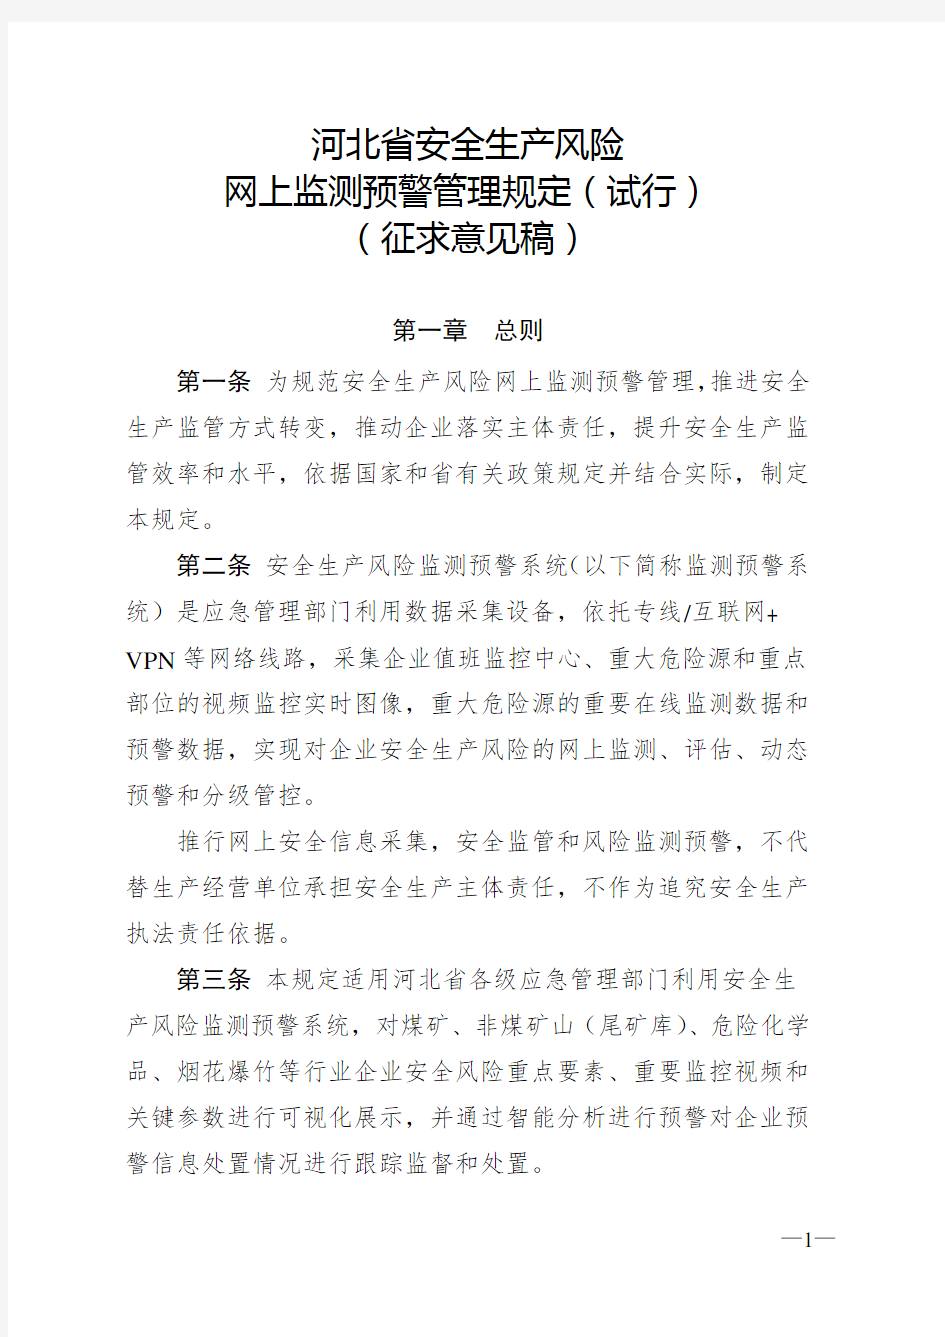 河北省安全生产风险网上监测预警管理规定(试行)